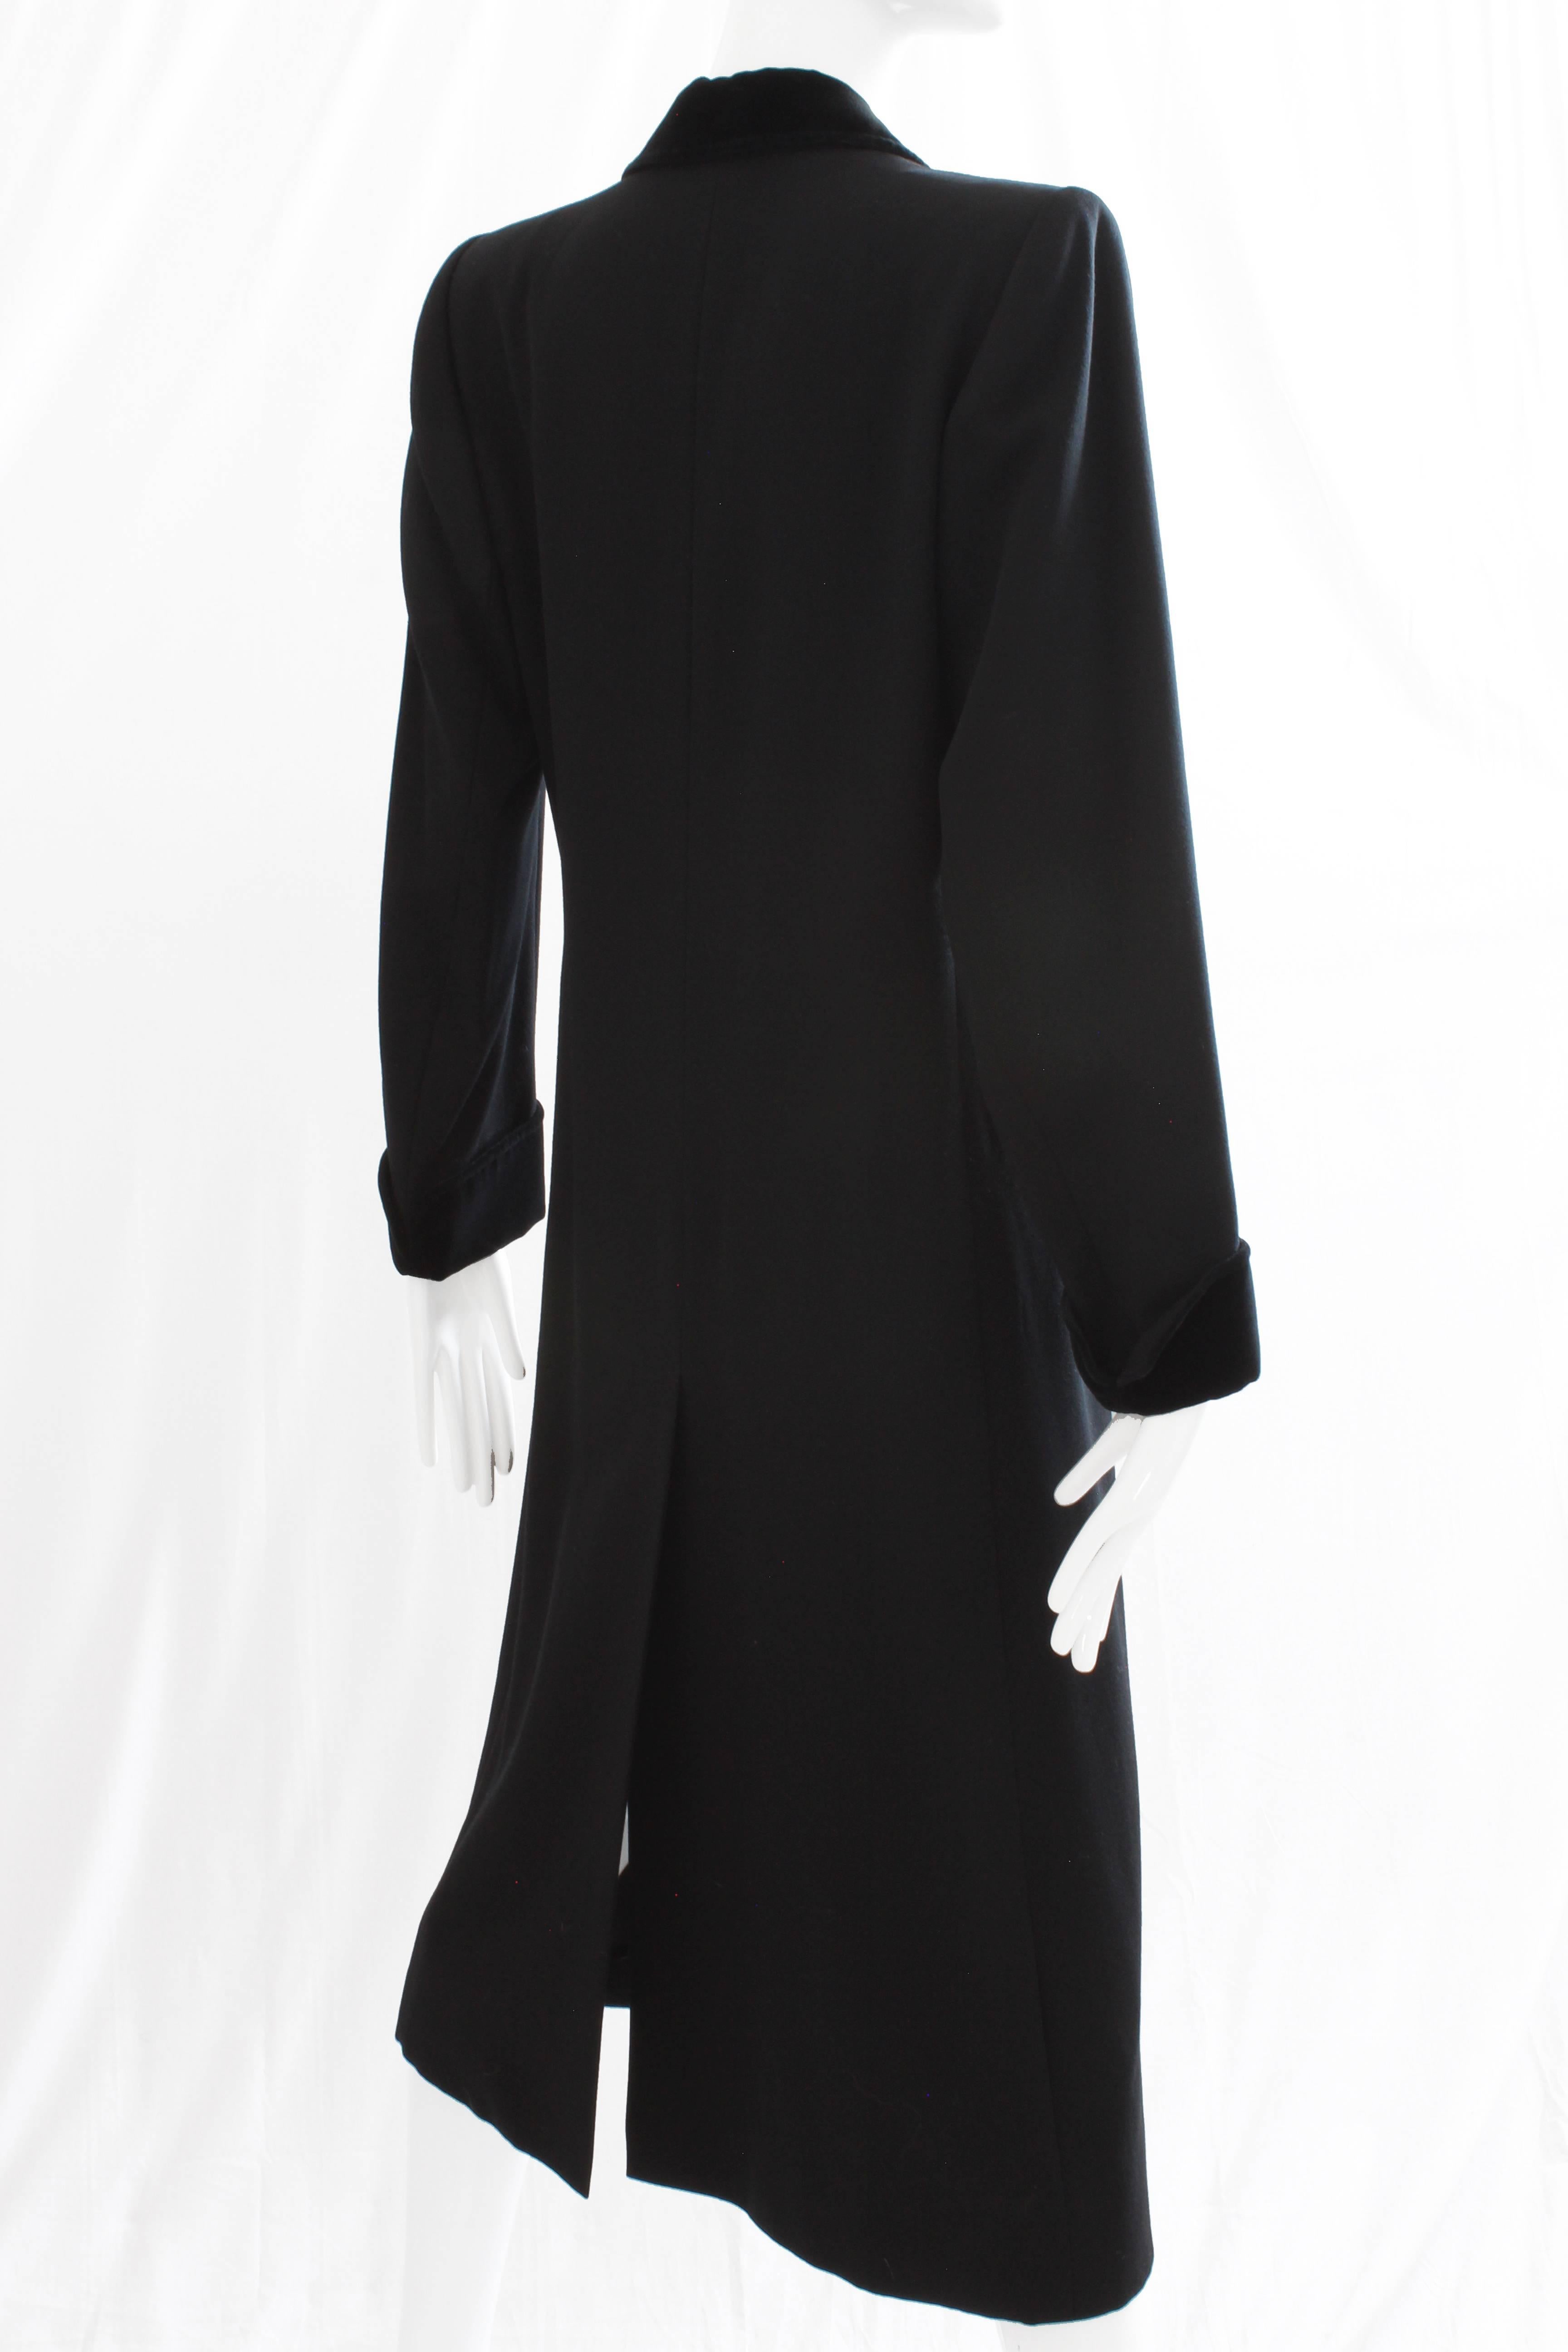 70s Yves Saint Laurent Long Black Coat Fitted YSL Rive Gauche Wool Gabardine 40 3